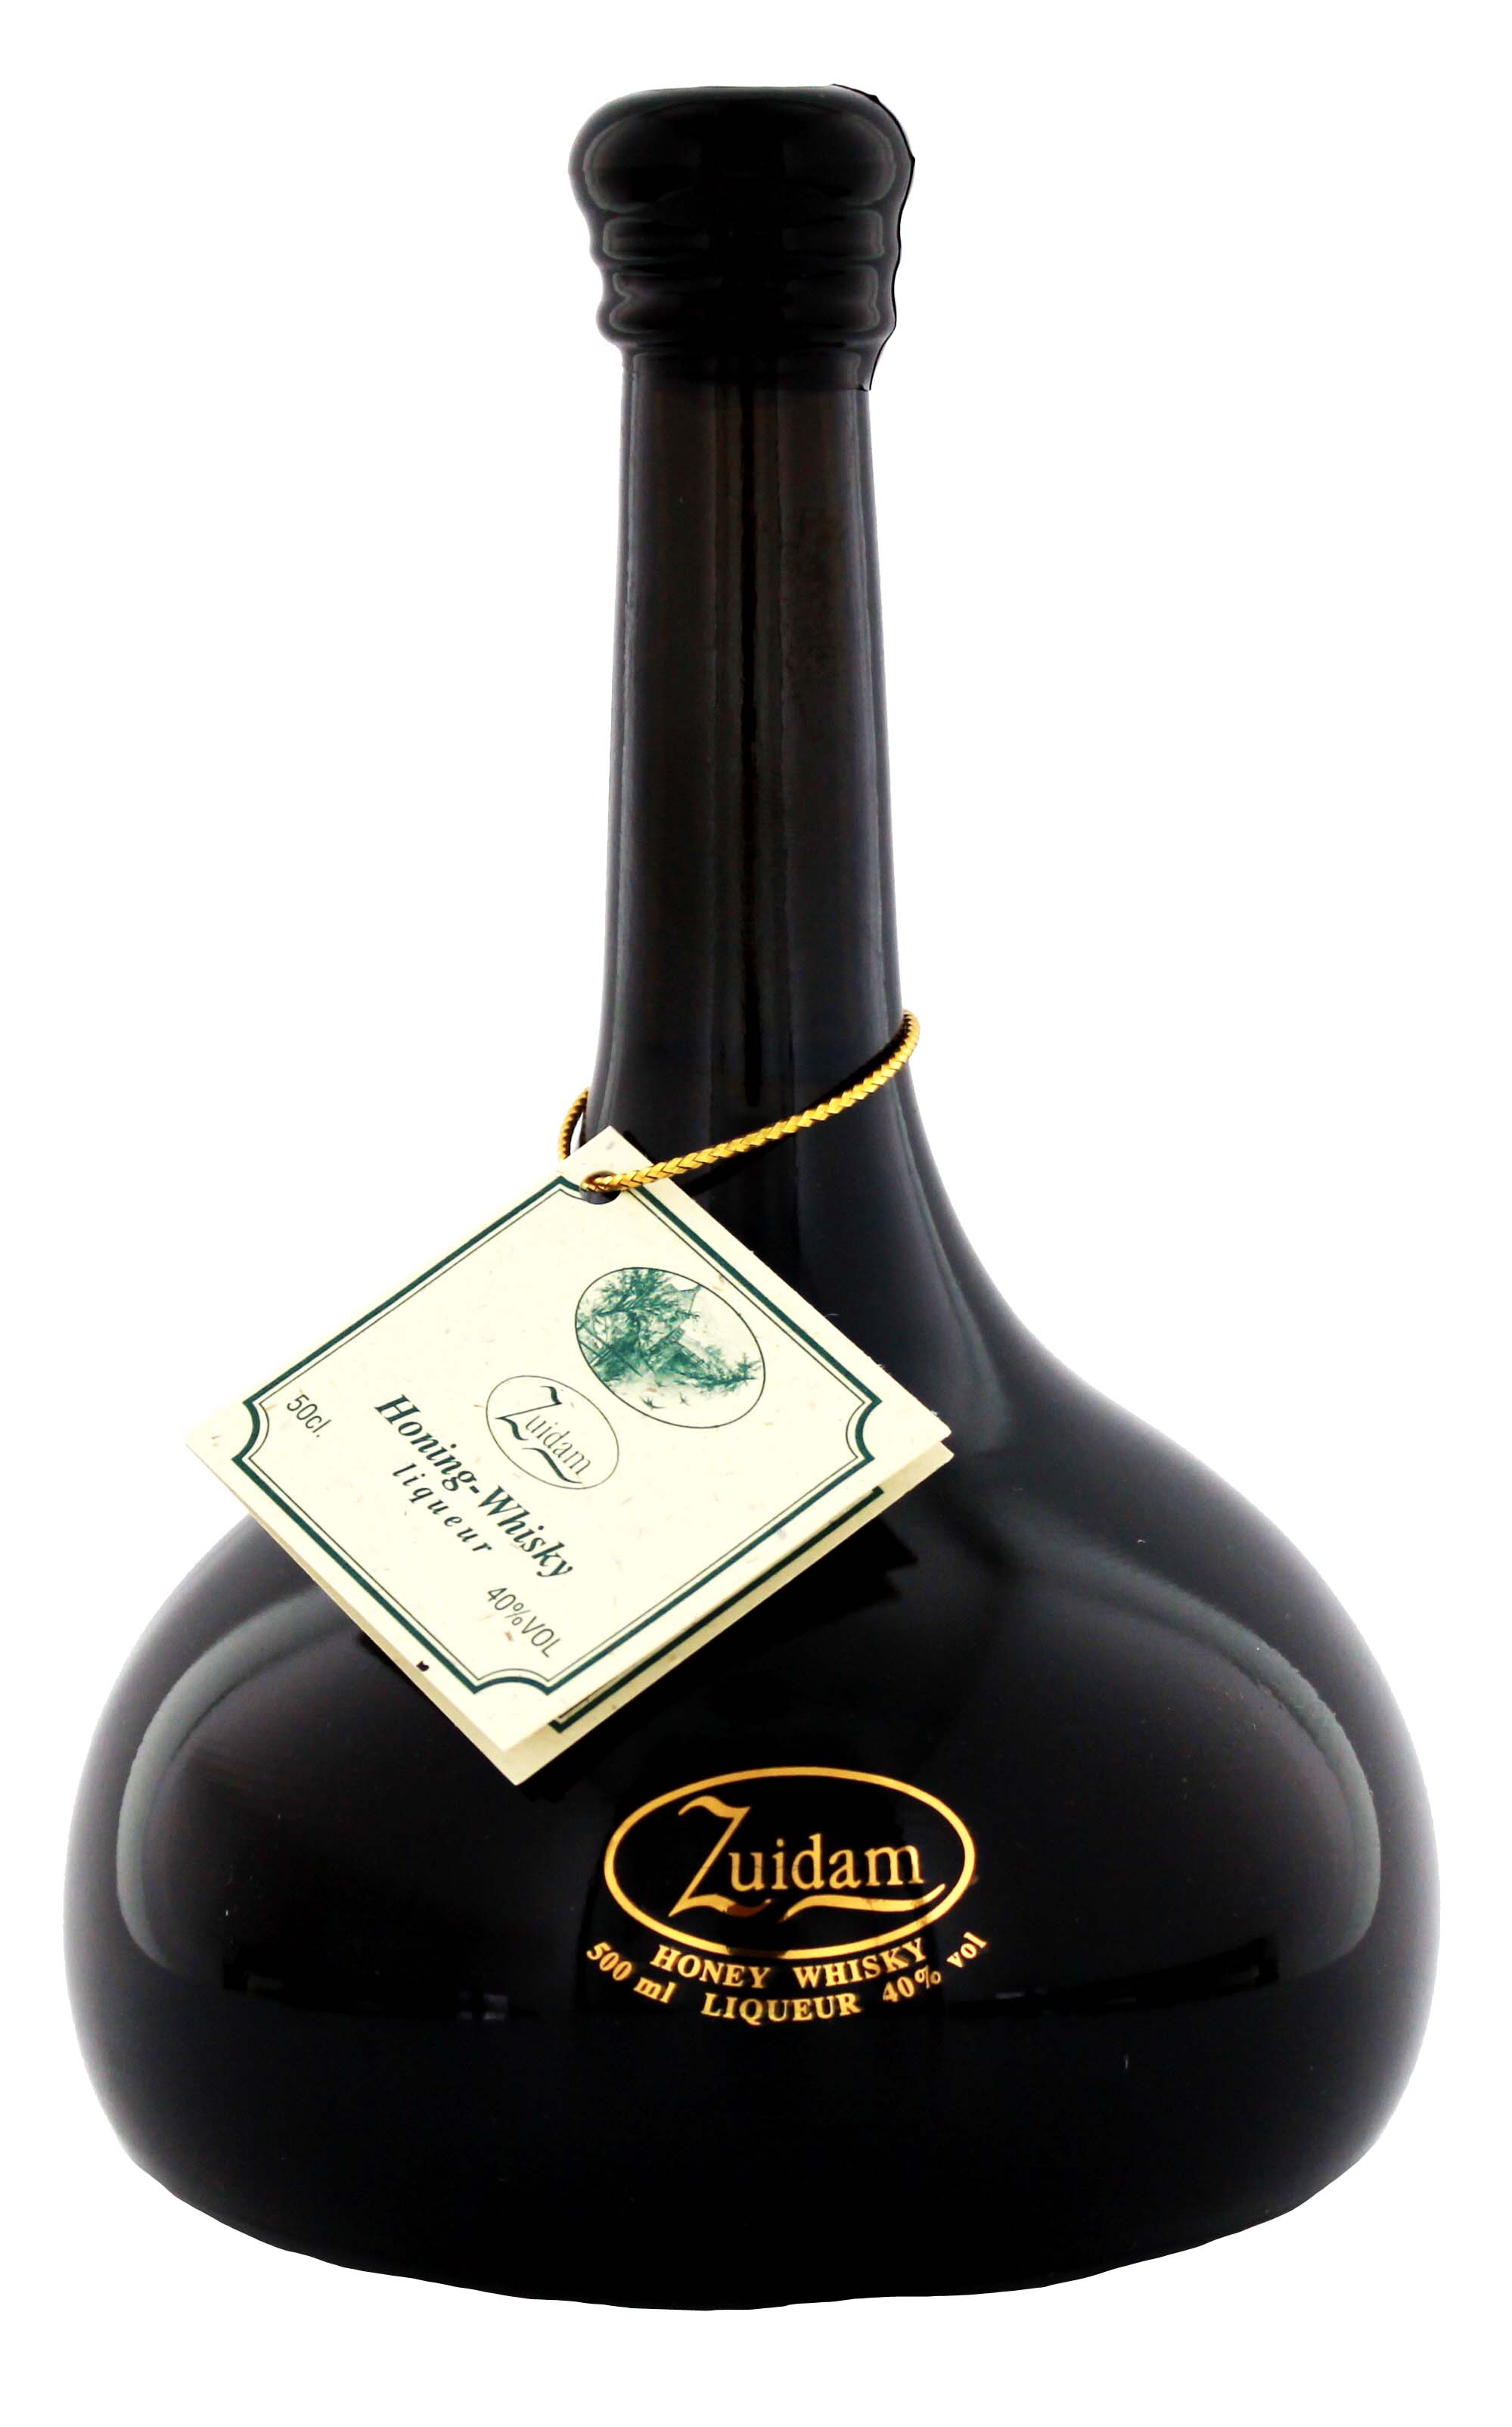 Zuidam Honig Whisky kaufen Drinkology im Liqueur Online Shop! jetzt